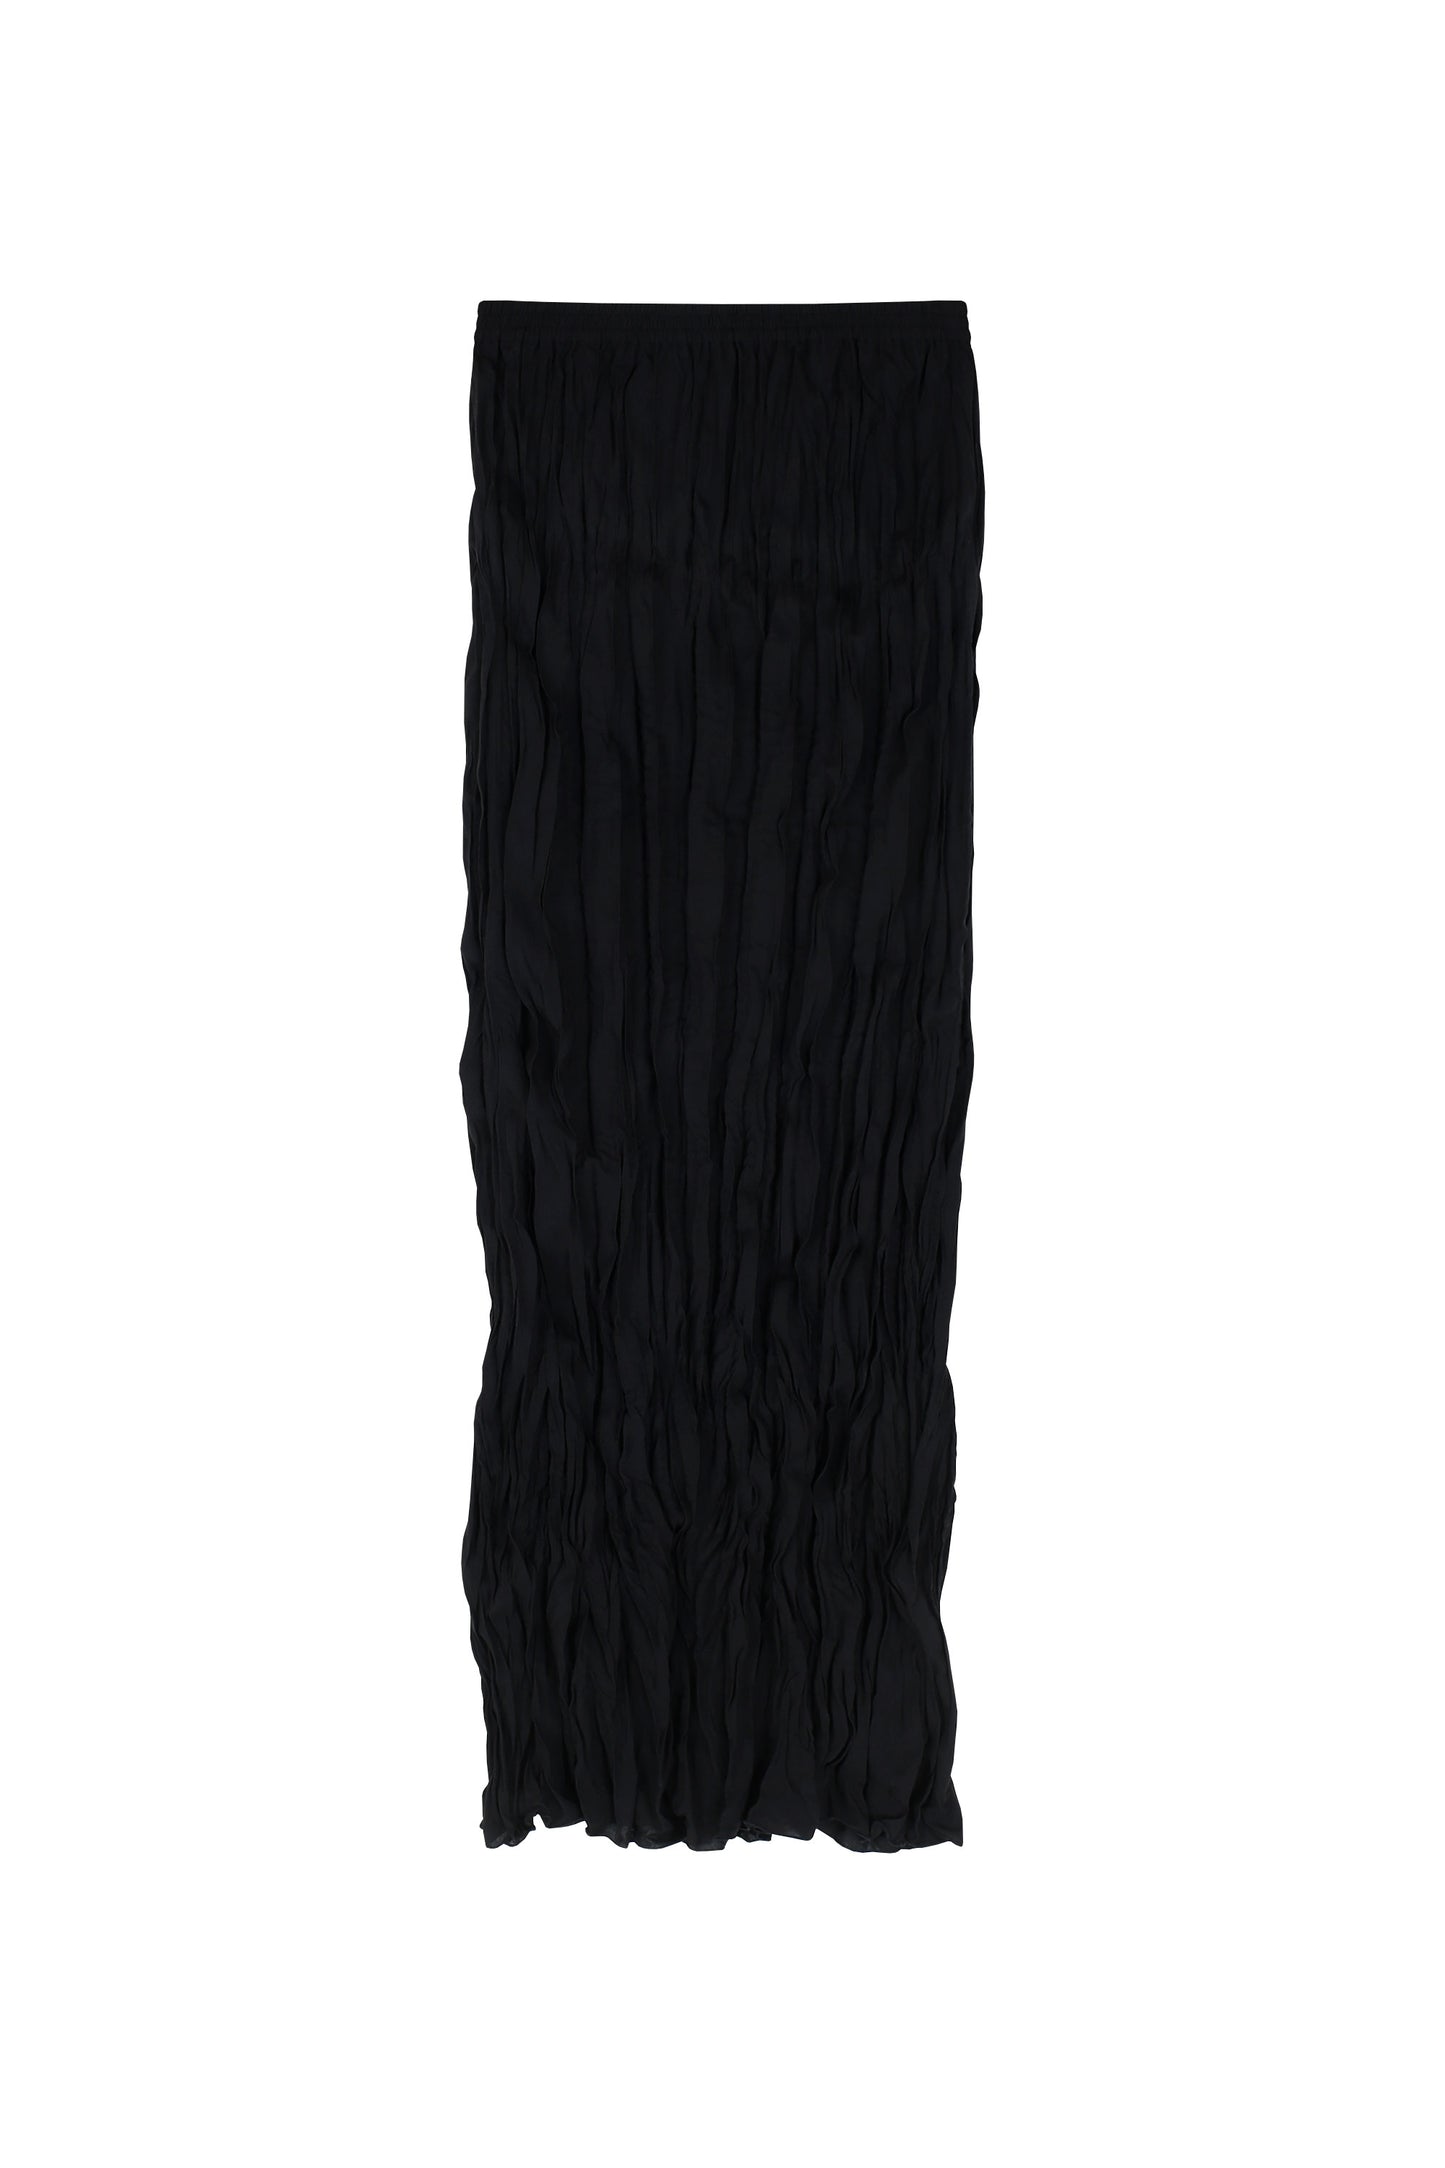 Black wrinkled skirt